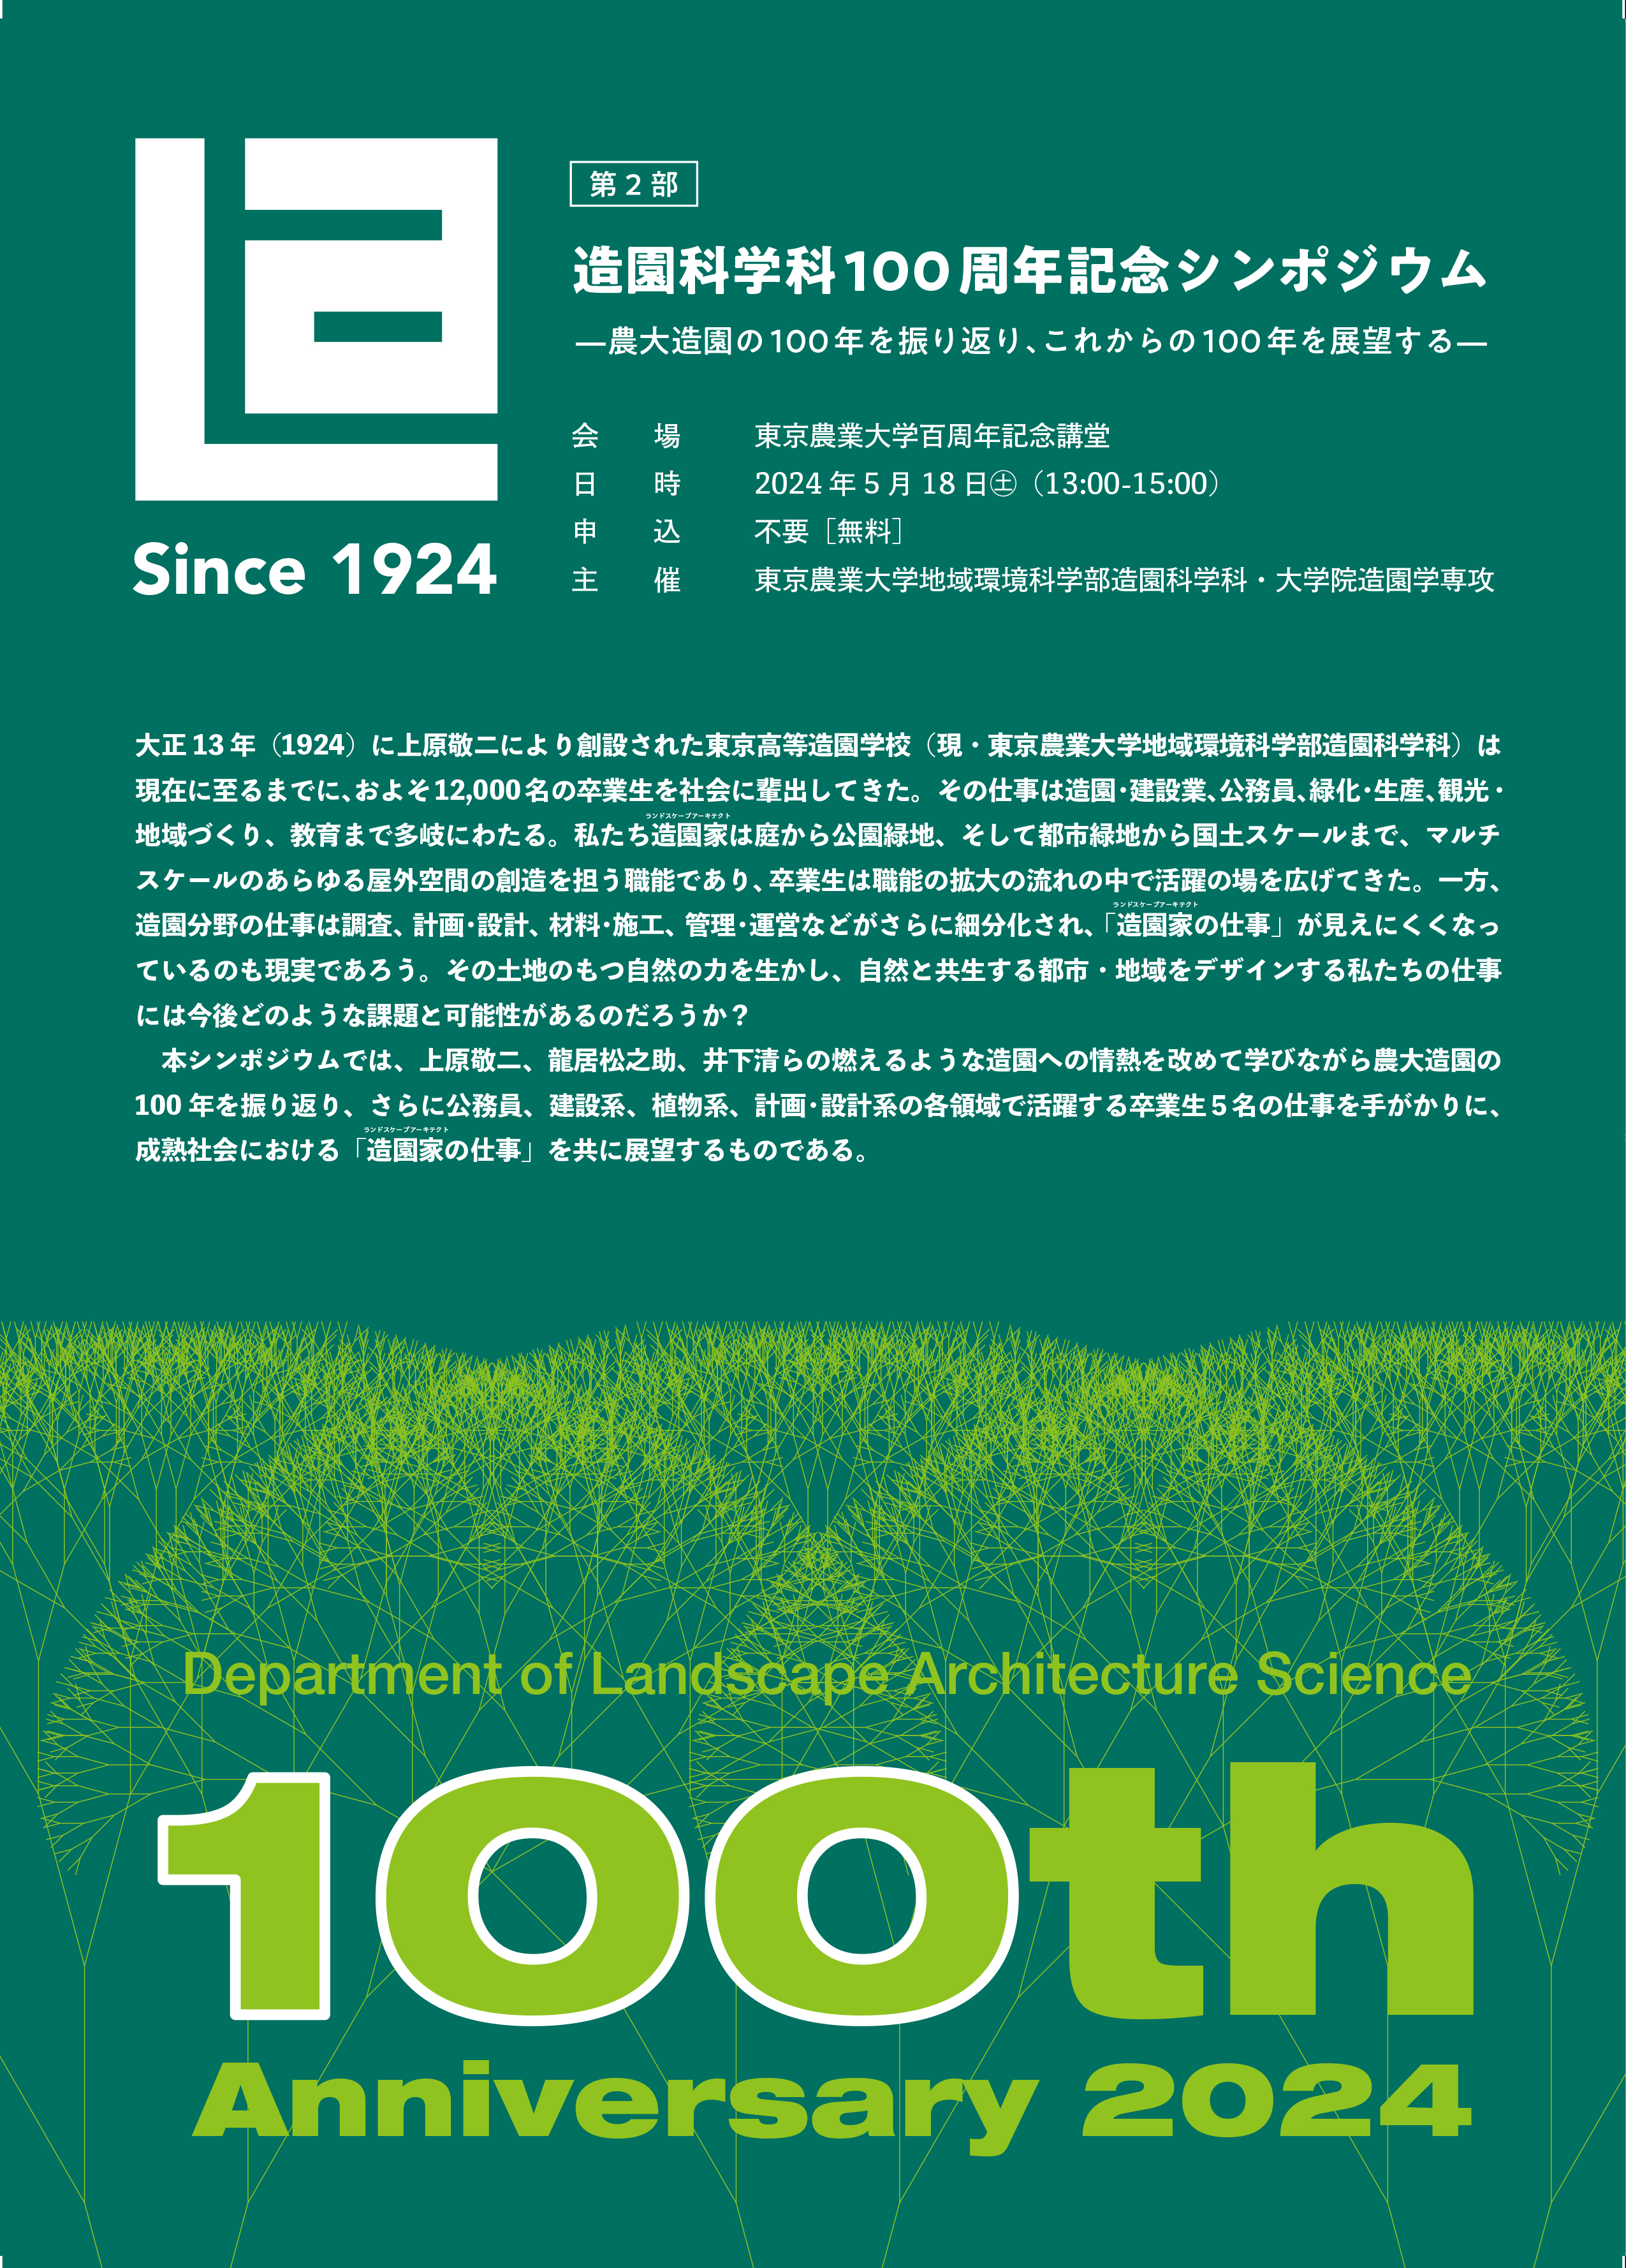 造園科学科100周年記念シンポジウムP1.jpg